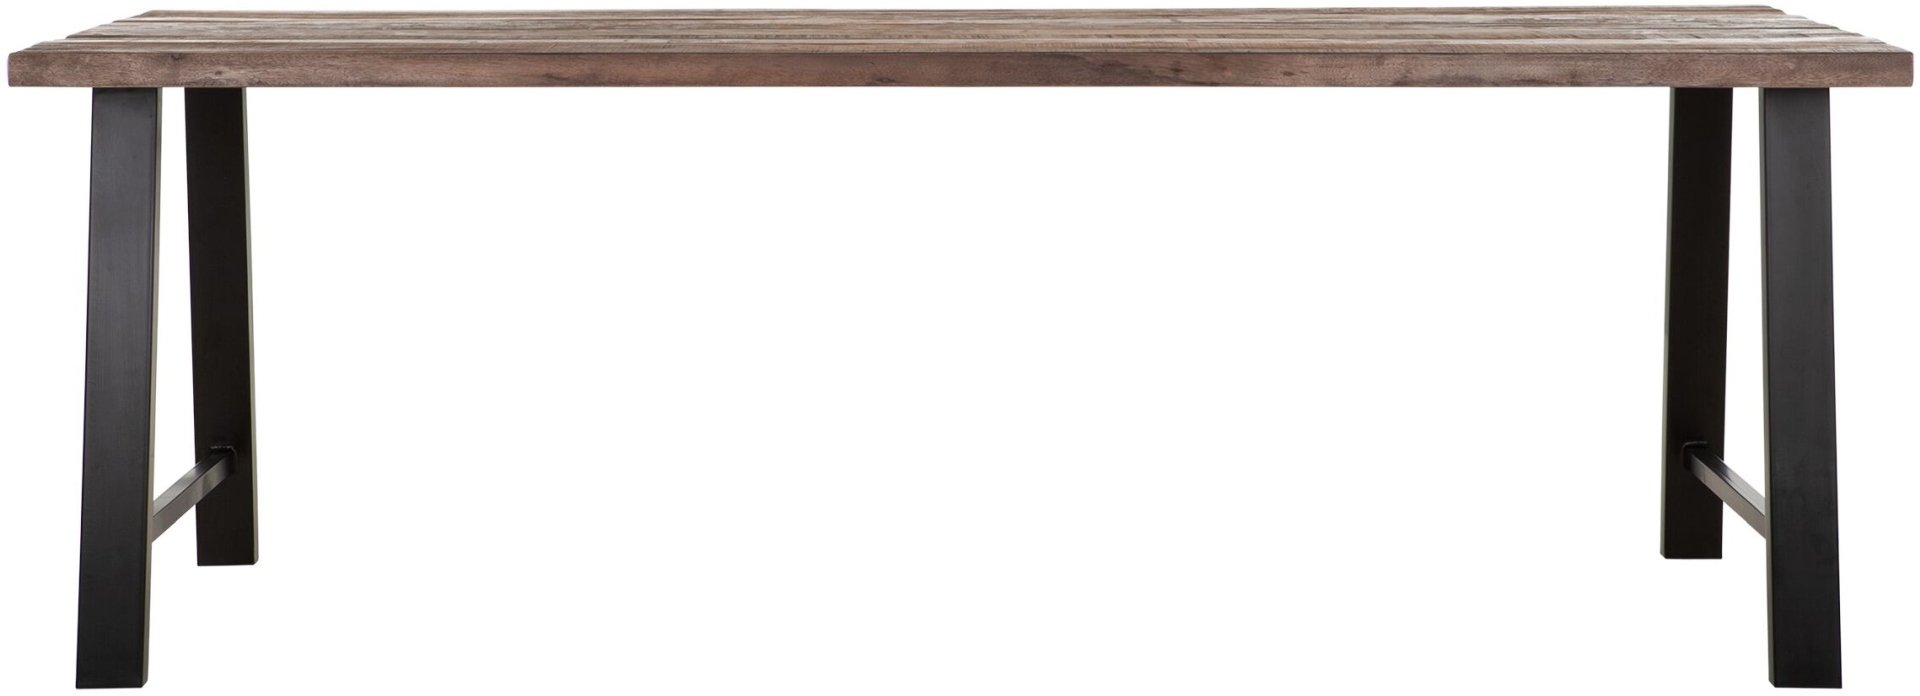 Der Esstisch Timber überzeugt mit seinem massivem aber auch modernem Design. Gefertigt wurde es aus verschiedenen Holzarten, welche einen natürlichen Farbton besitzen. Der Esstisch besitzt eine Länge von 225 cm.